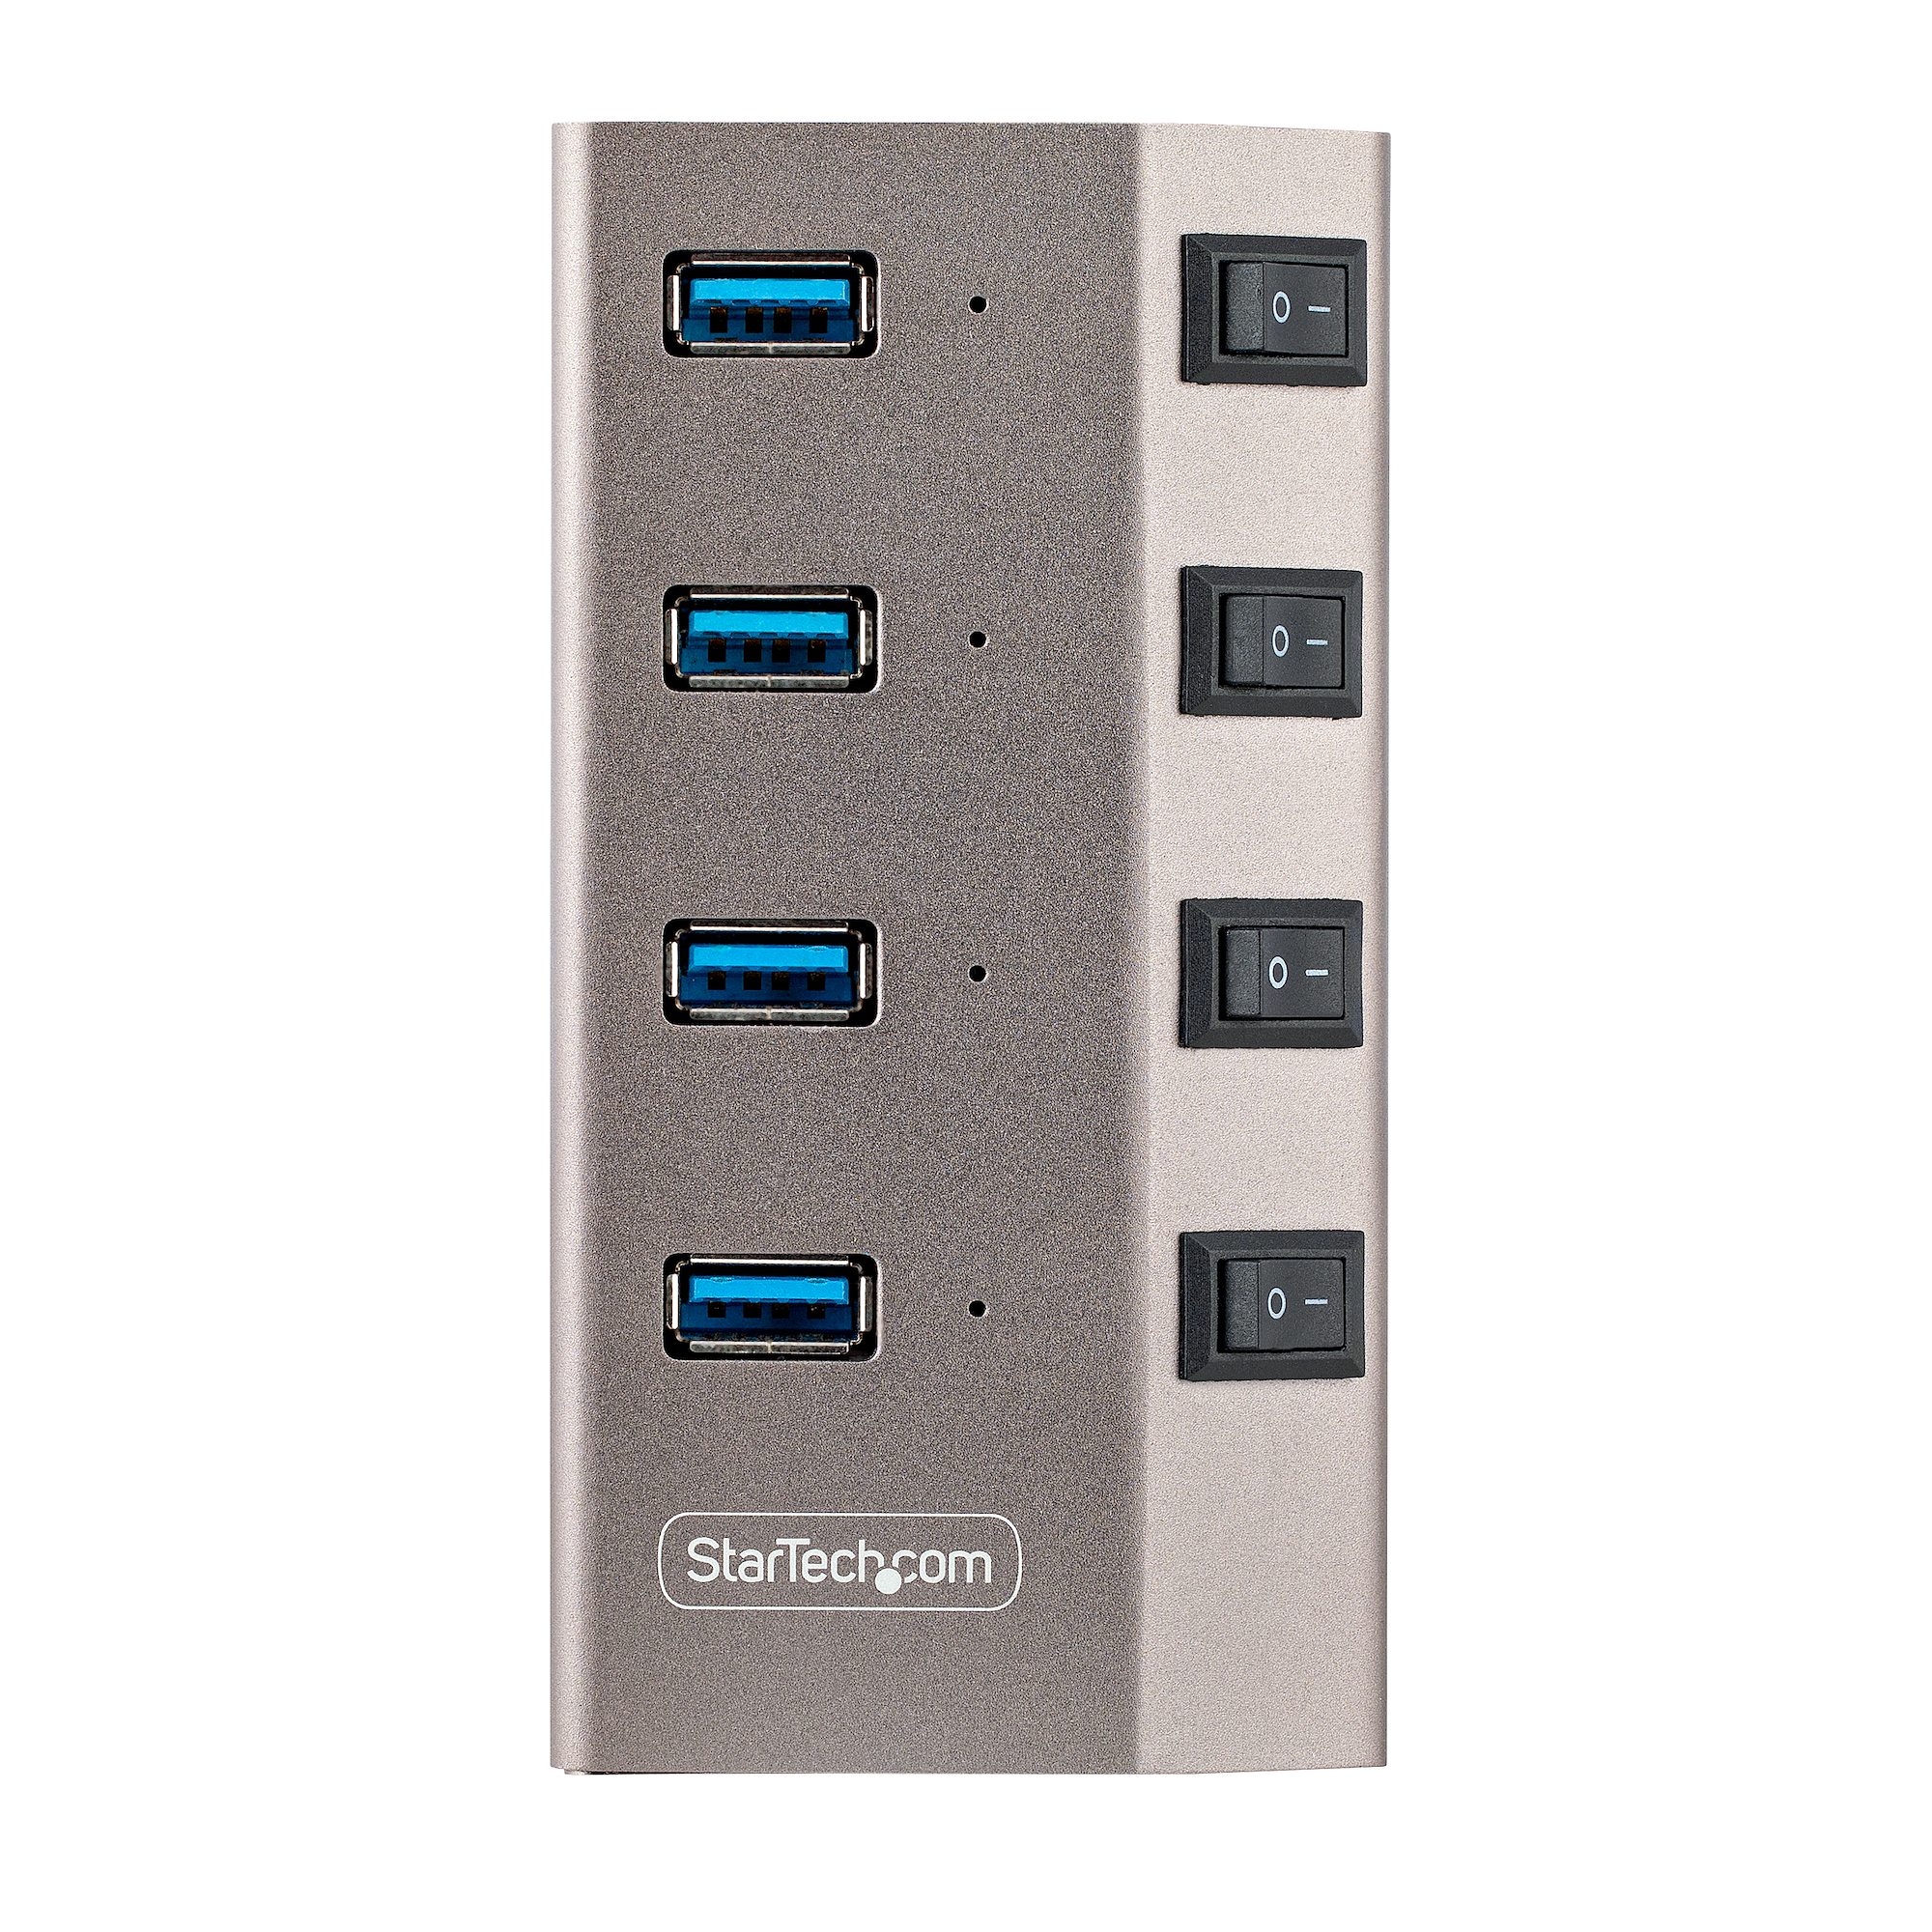 Hub multiplicador USB version 3.0 de 4 puertos – Electronica Cecomin